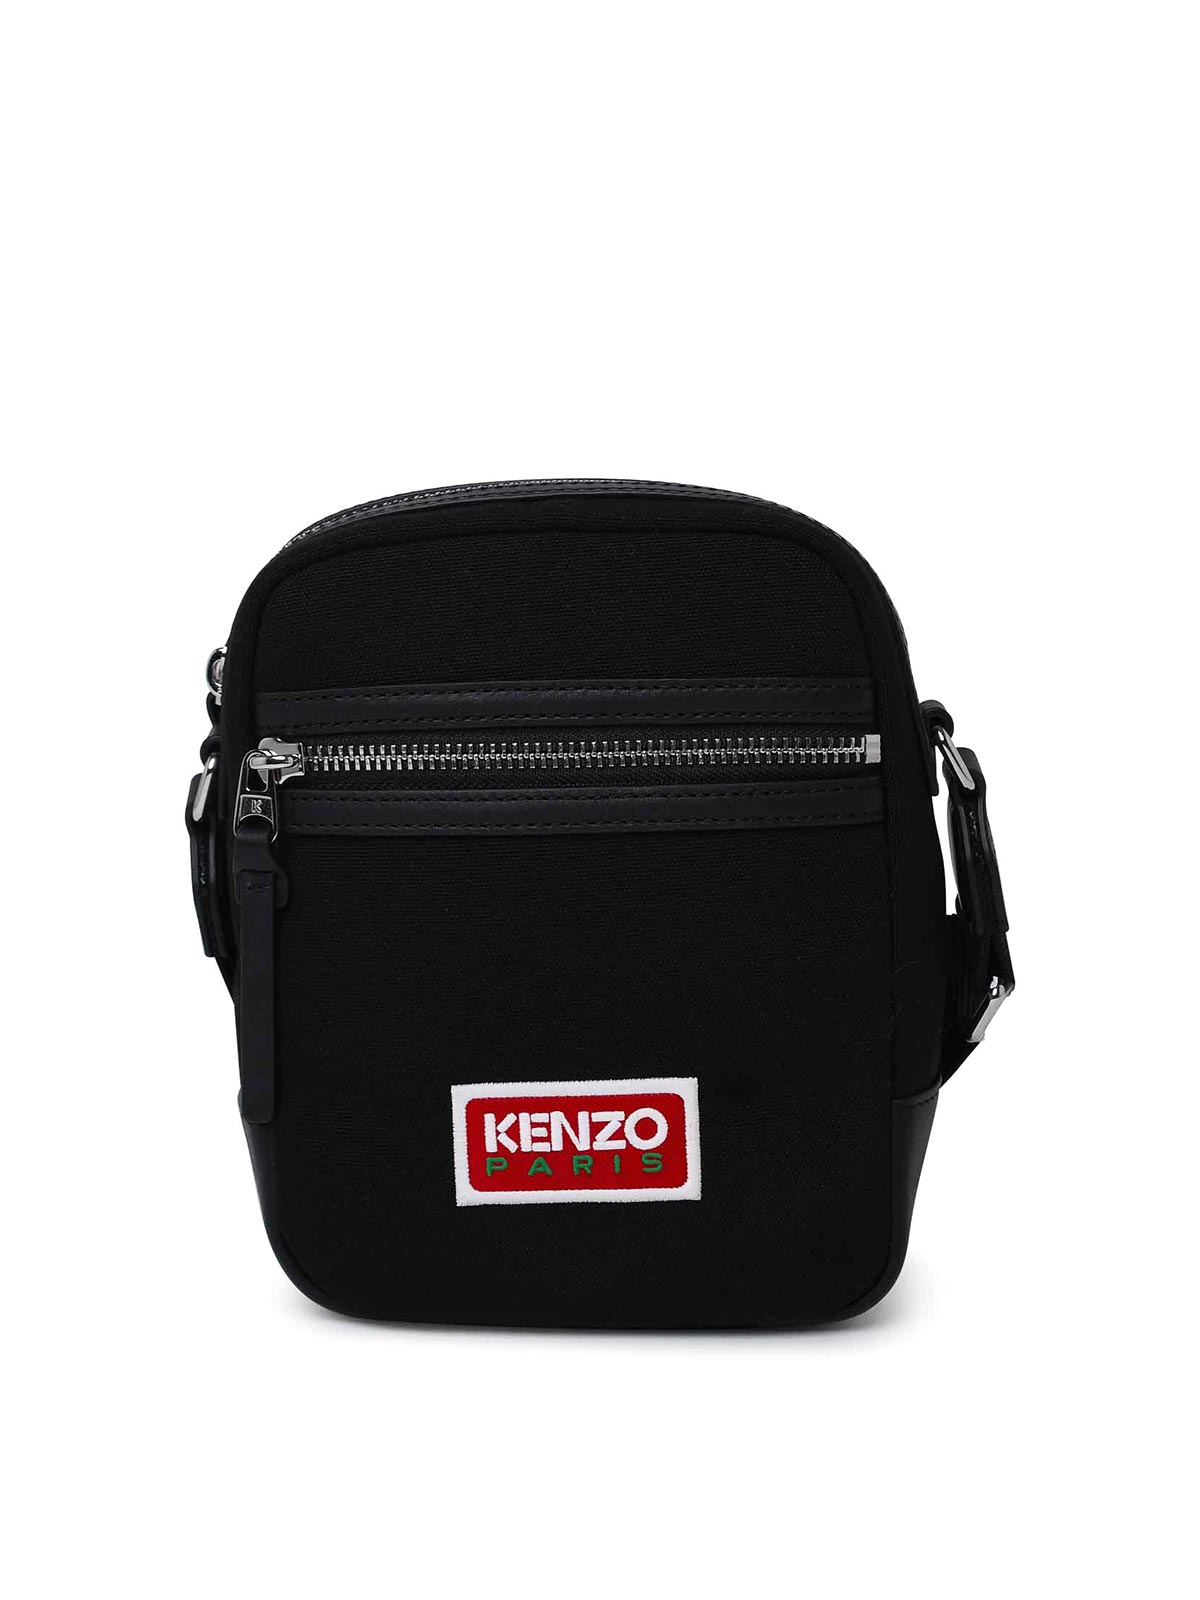 Kenzo Written Logo Shoulder Strap In Black